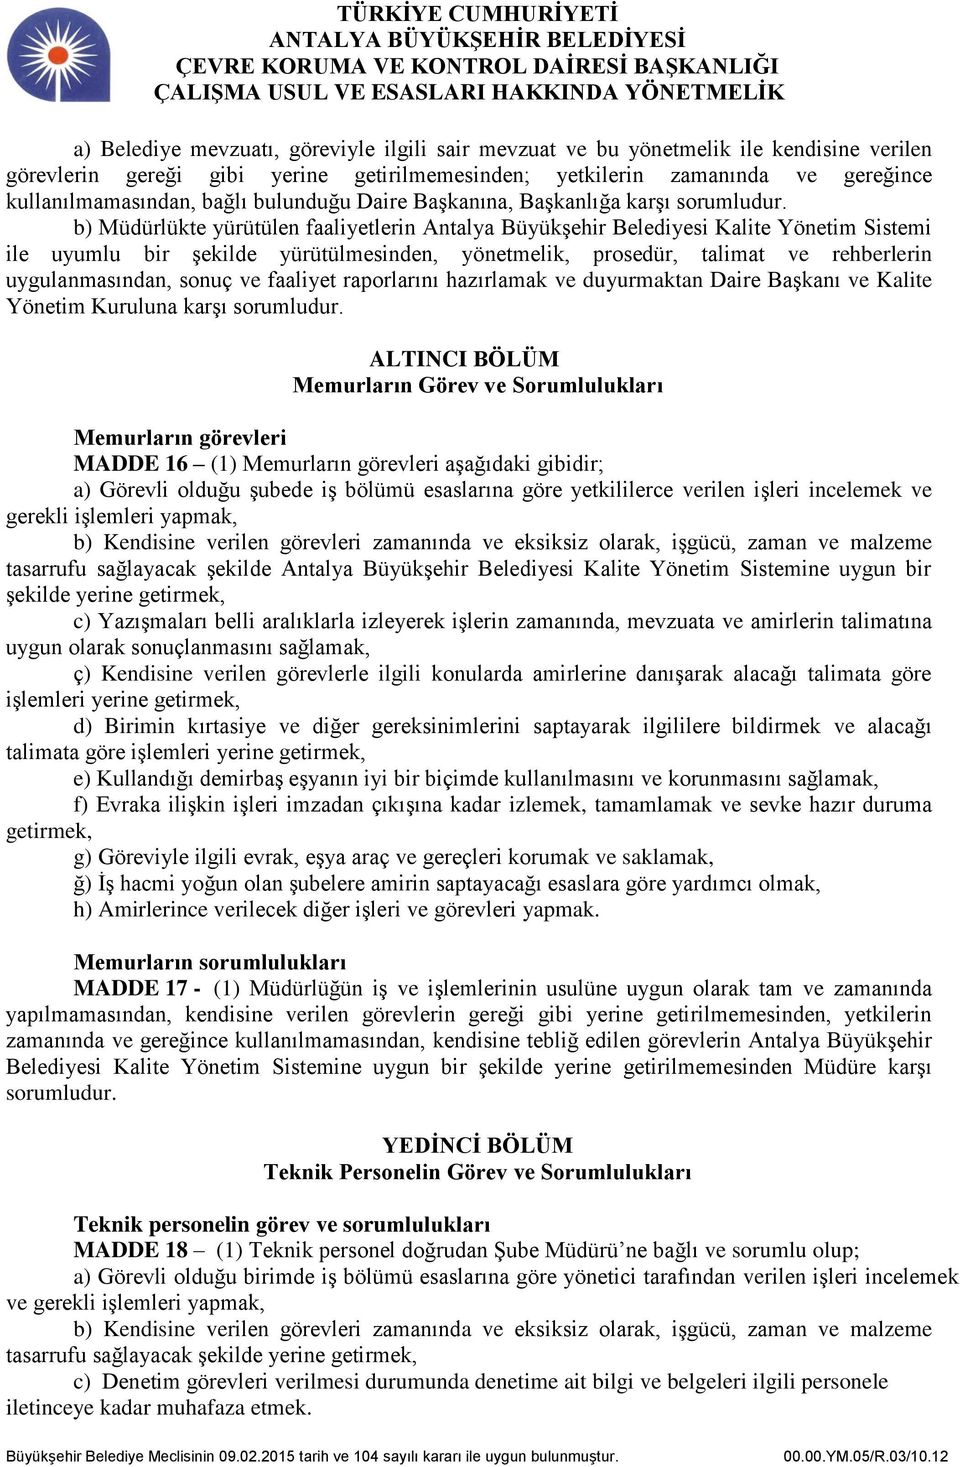 b) Müdürlükte yürütülen faaliyetlerin Antalya Büyükşehir Belediyesi Kalite Yönetim Sistemi ile uyumlu bir şekilde yürütülmesinden, yönetmelik, prosedür, talimat ve rehberlerin uygulanmasından, sonuç